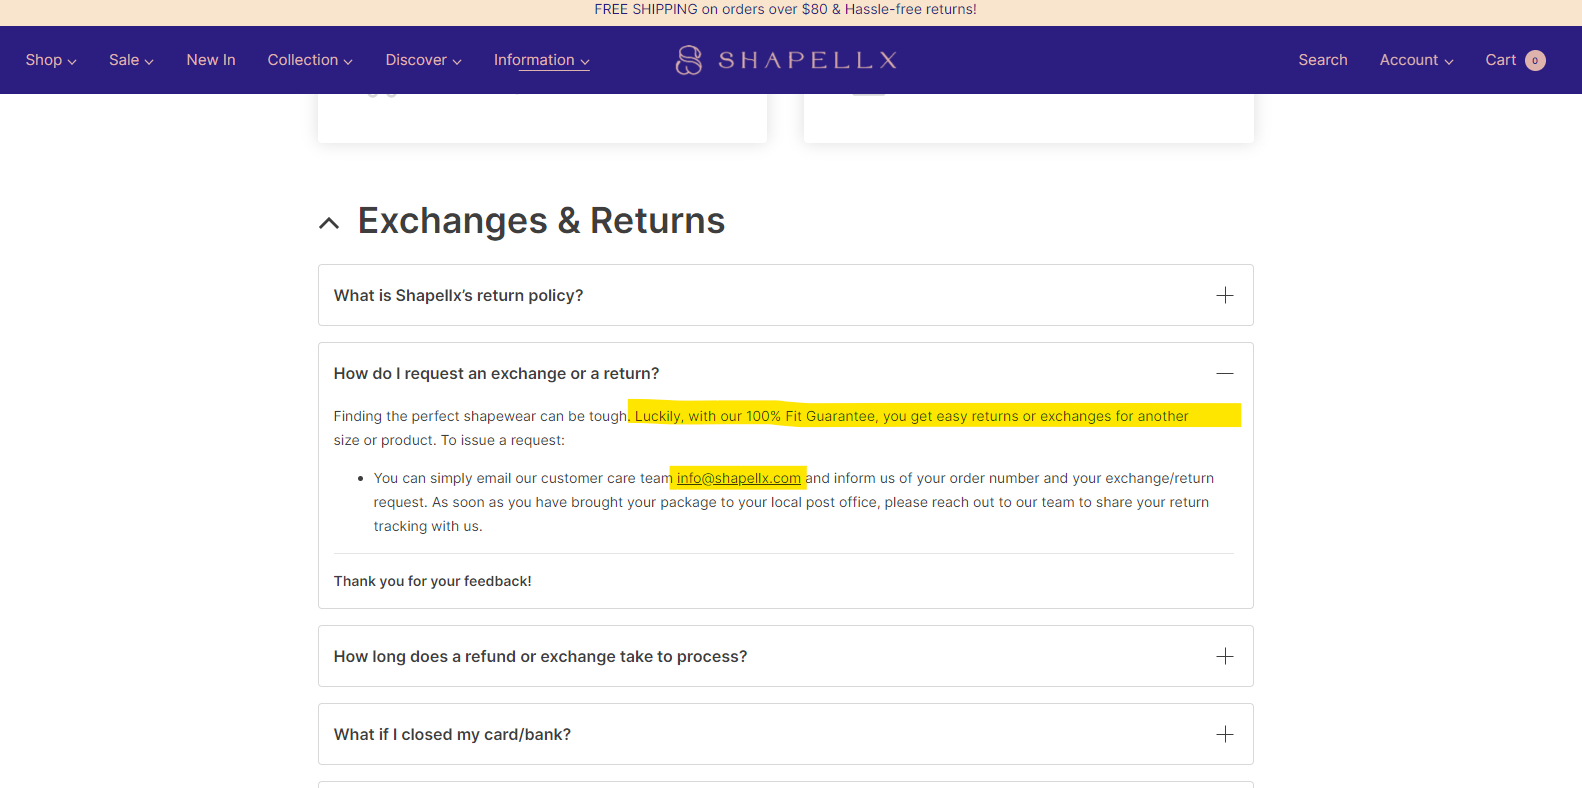 108 Shapellx Reviews  shapellx.com @ PissedConsumer